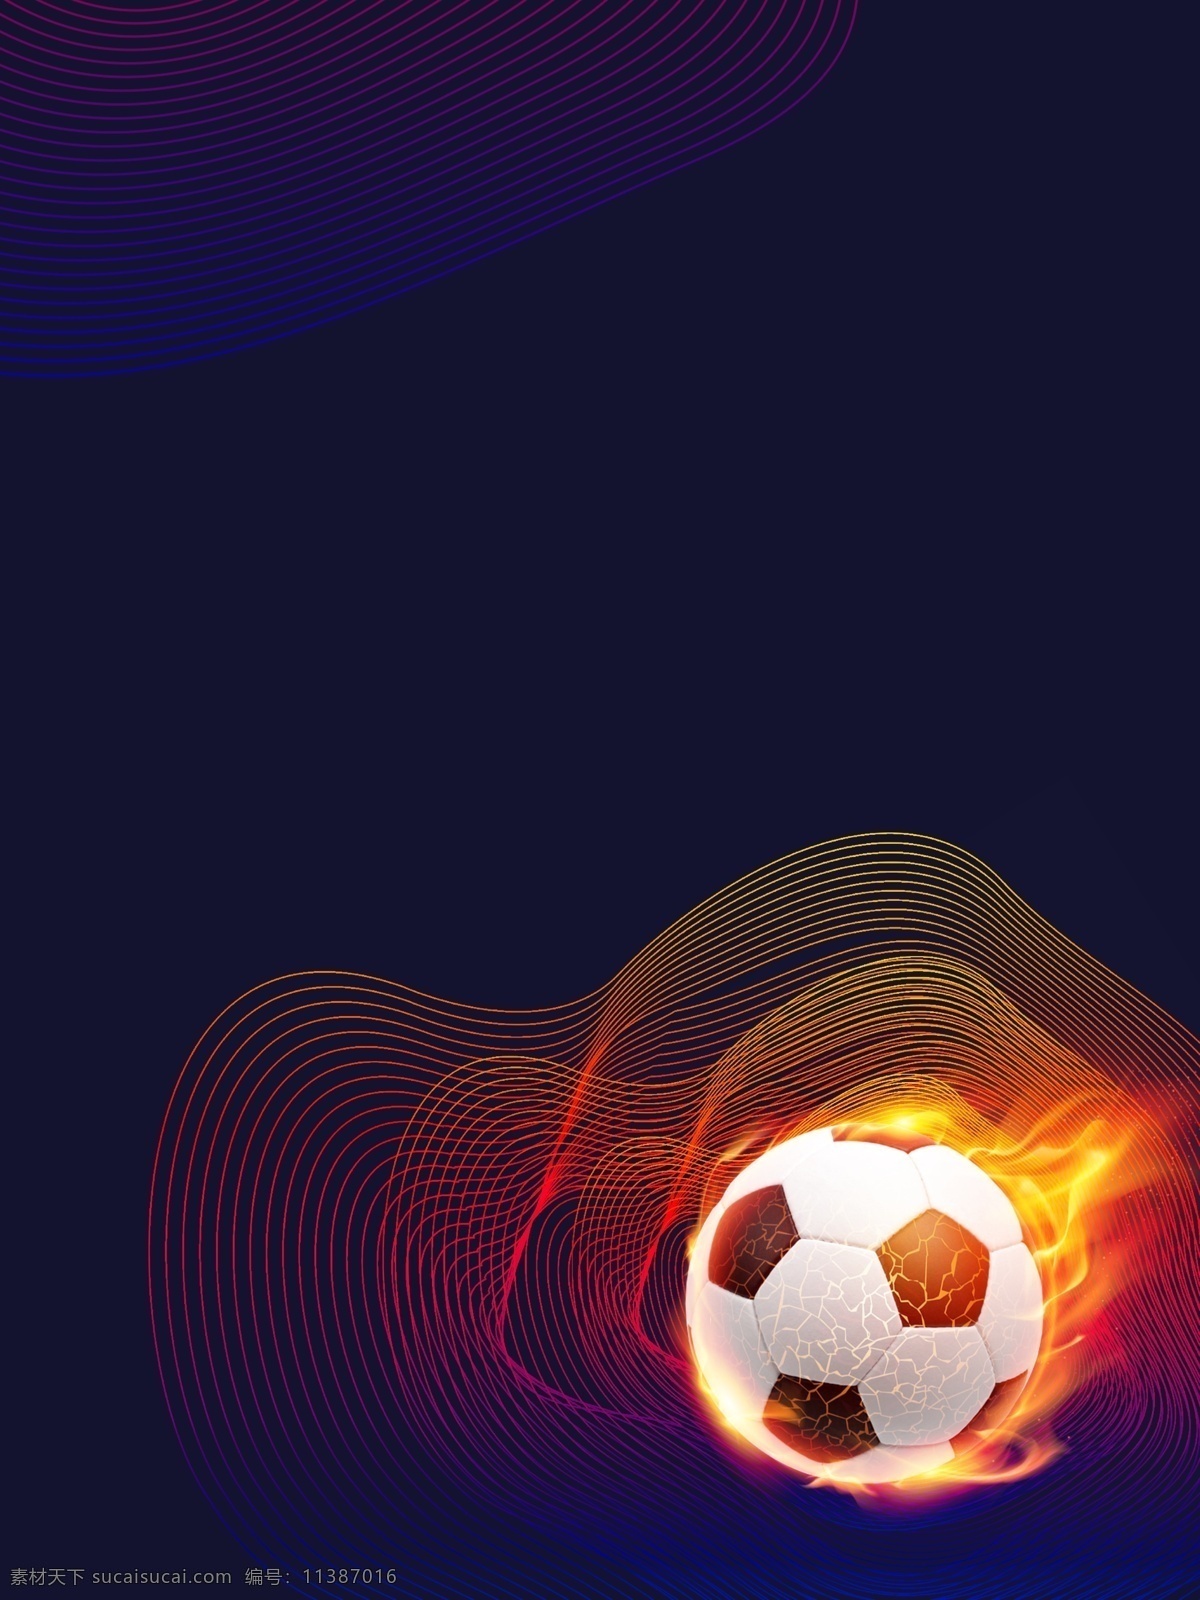 深蓝色 彩色 线条 创意 足球 运动 背景 深蓝色背景 彩色线条背景 创意背景 足球背景 运动背景设计